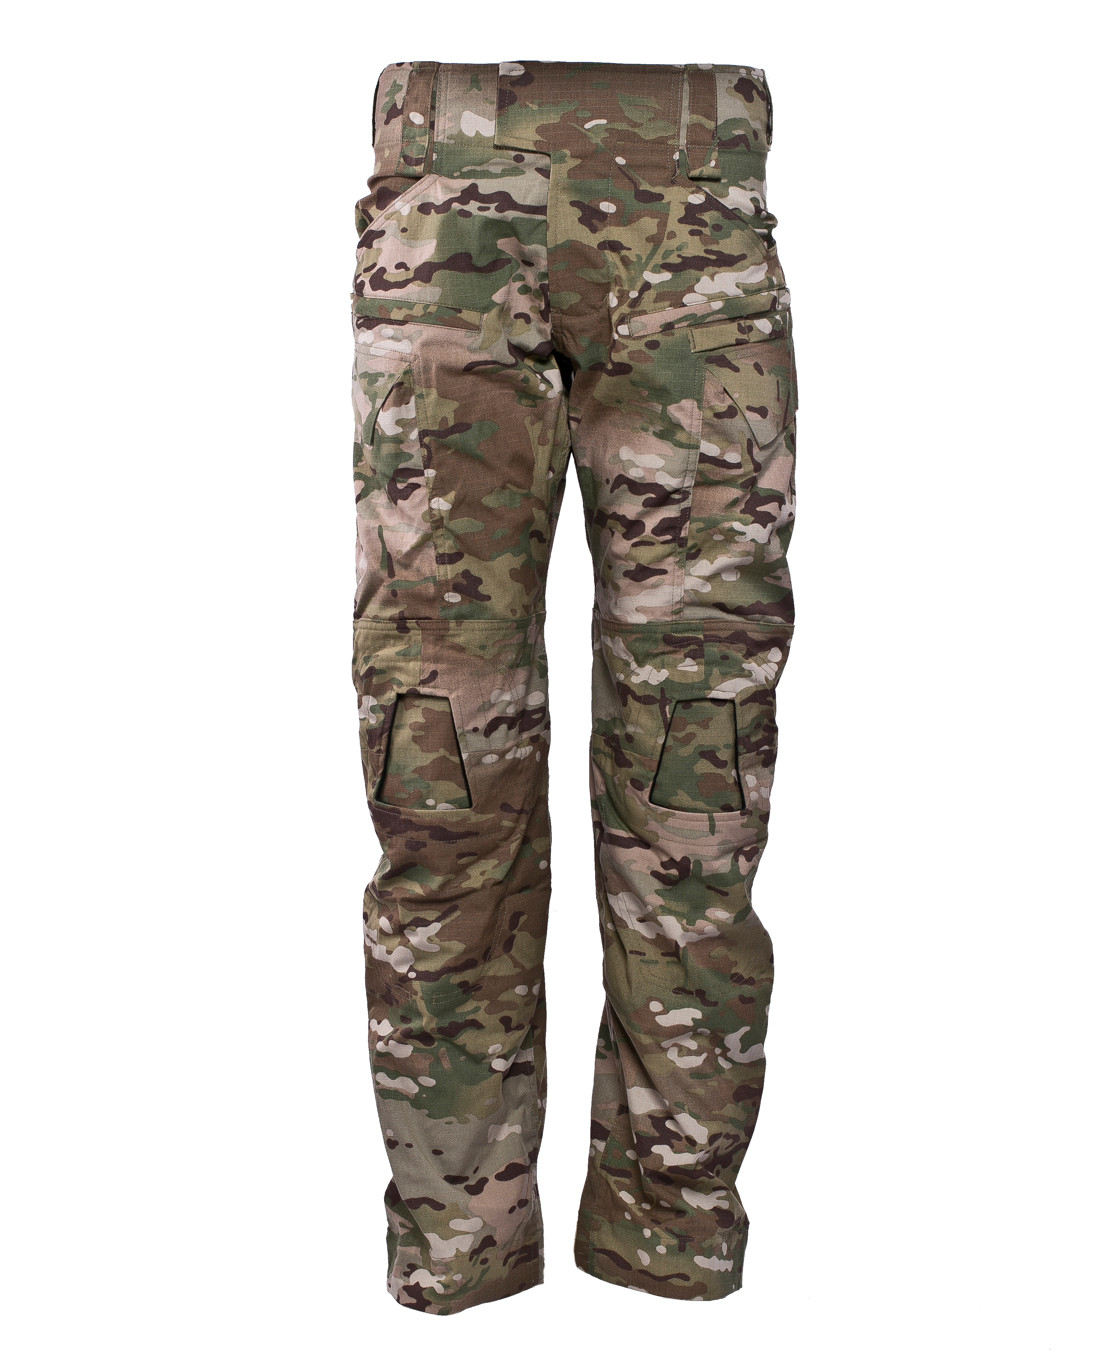 Тактические брюки Crye Precision G4 Combat Pants Multicam тактические брюки ur tactical gen 2 ultimate direct action pants multicam